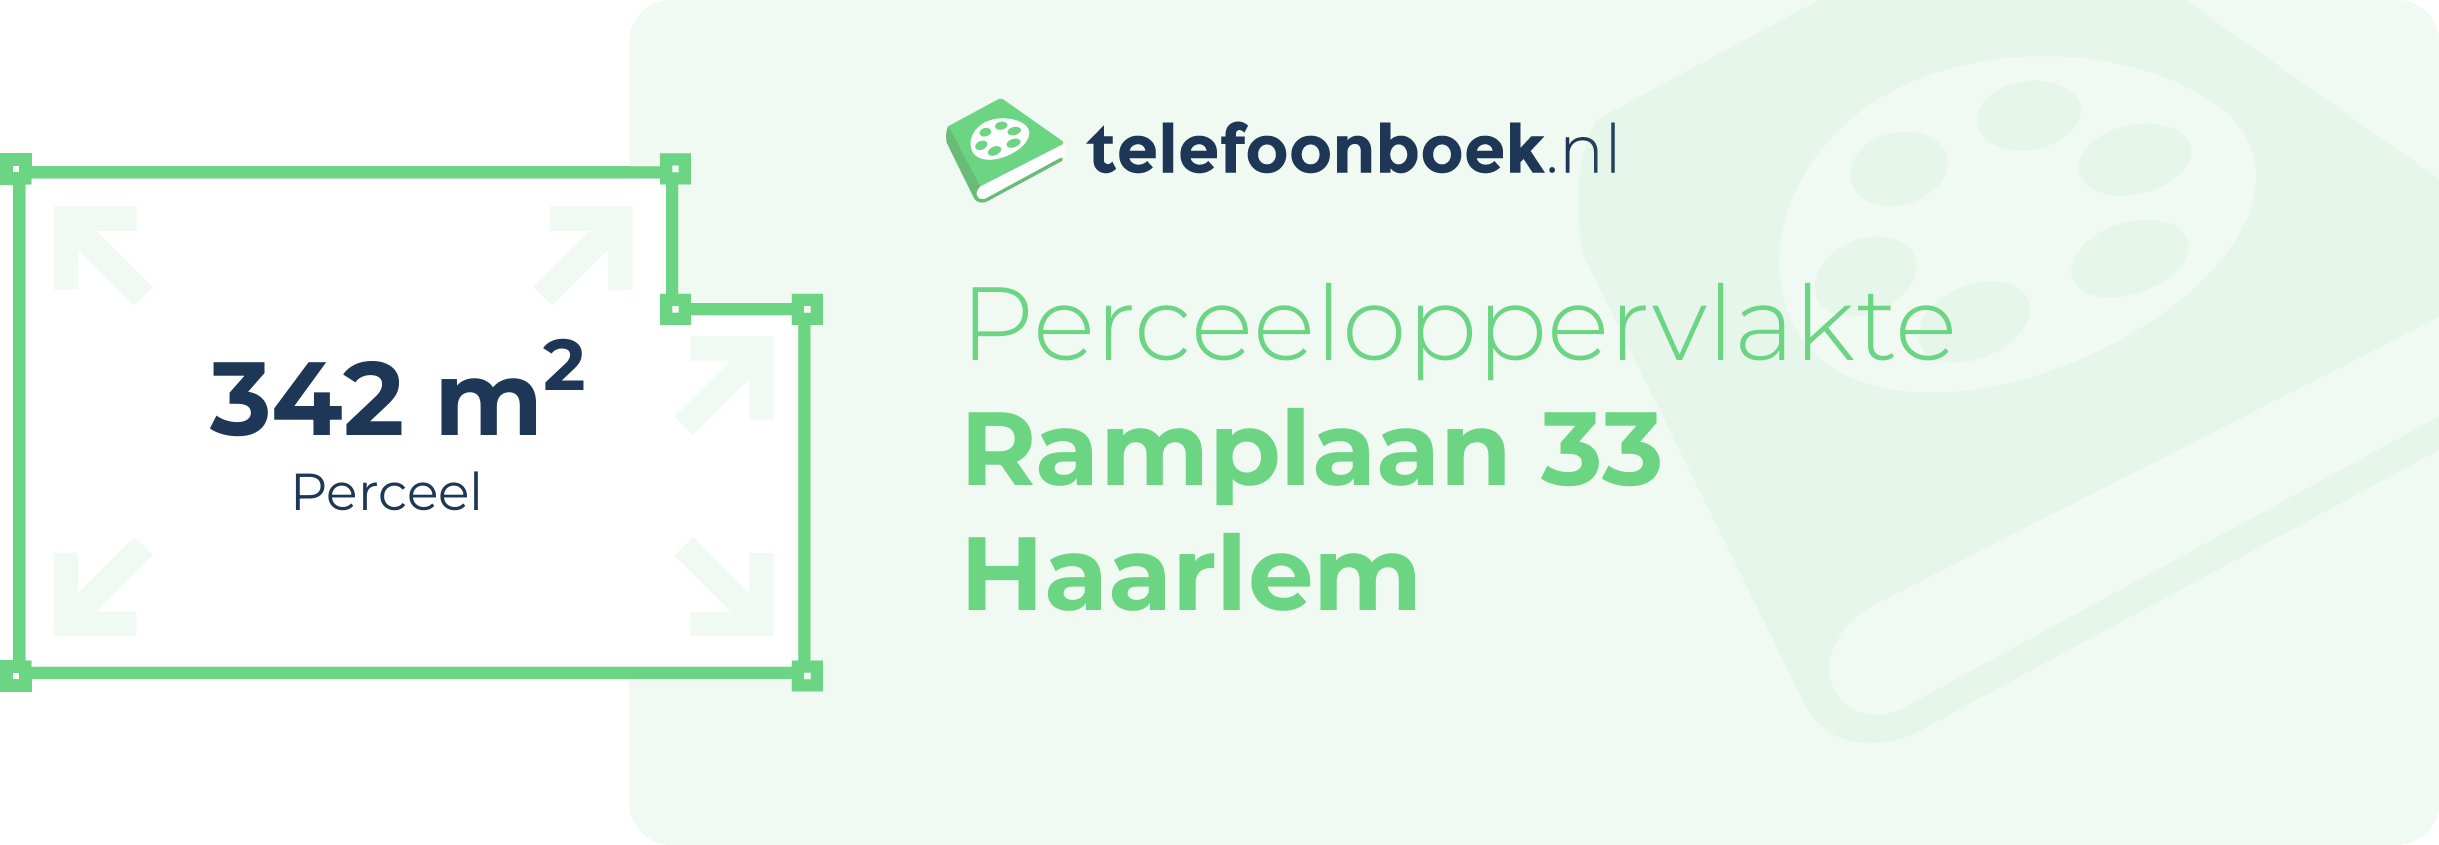 Perceeloppervlakte Ramplaan 33 Haarlem